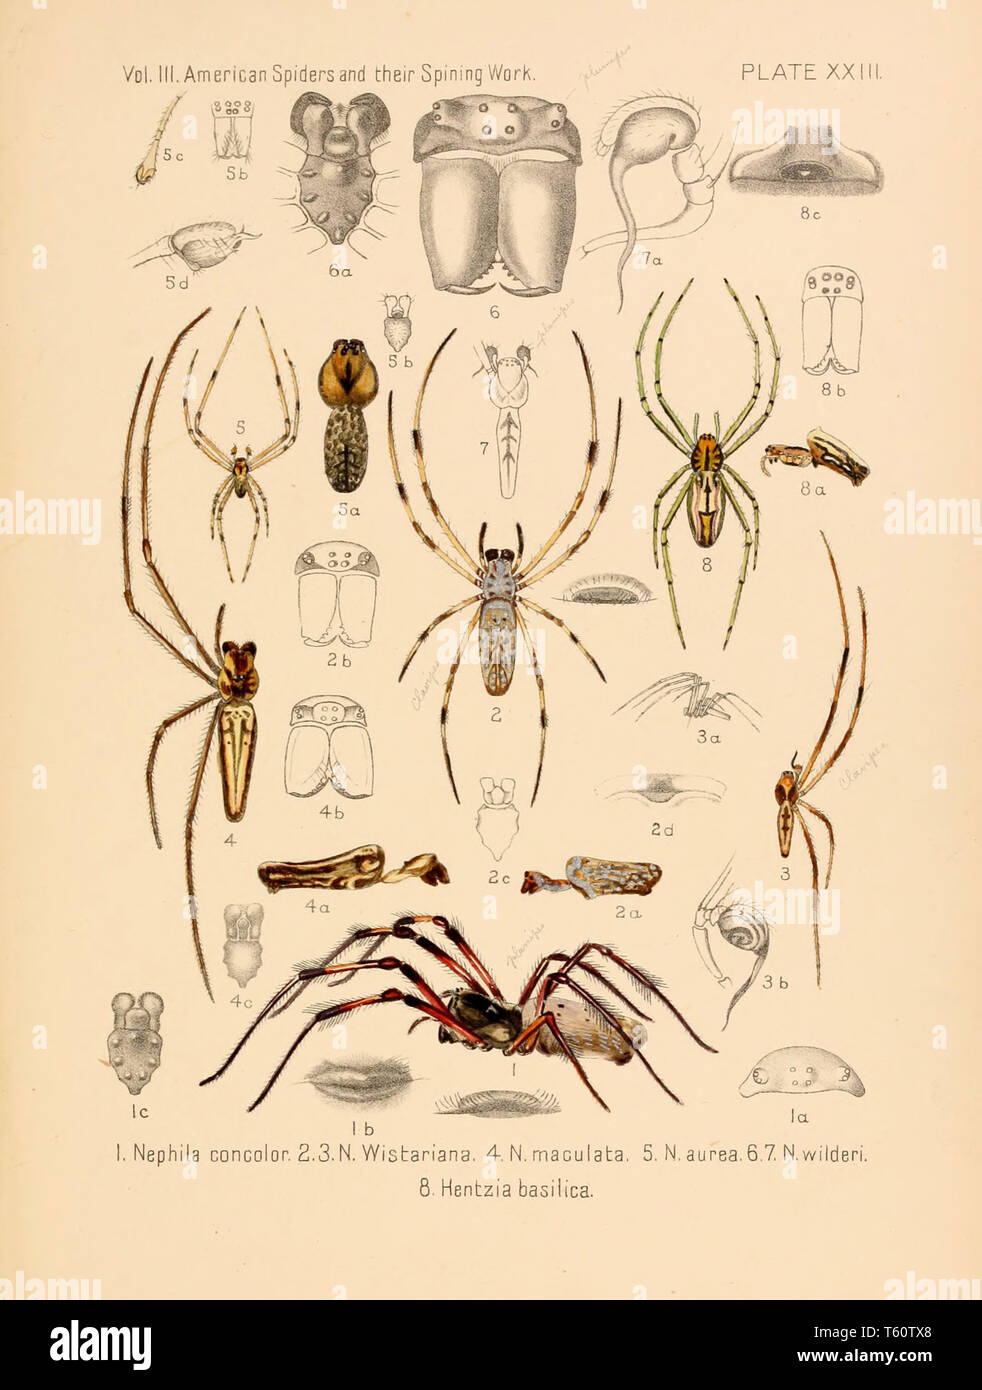 ilustraciones de Charles Darwin